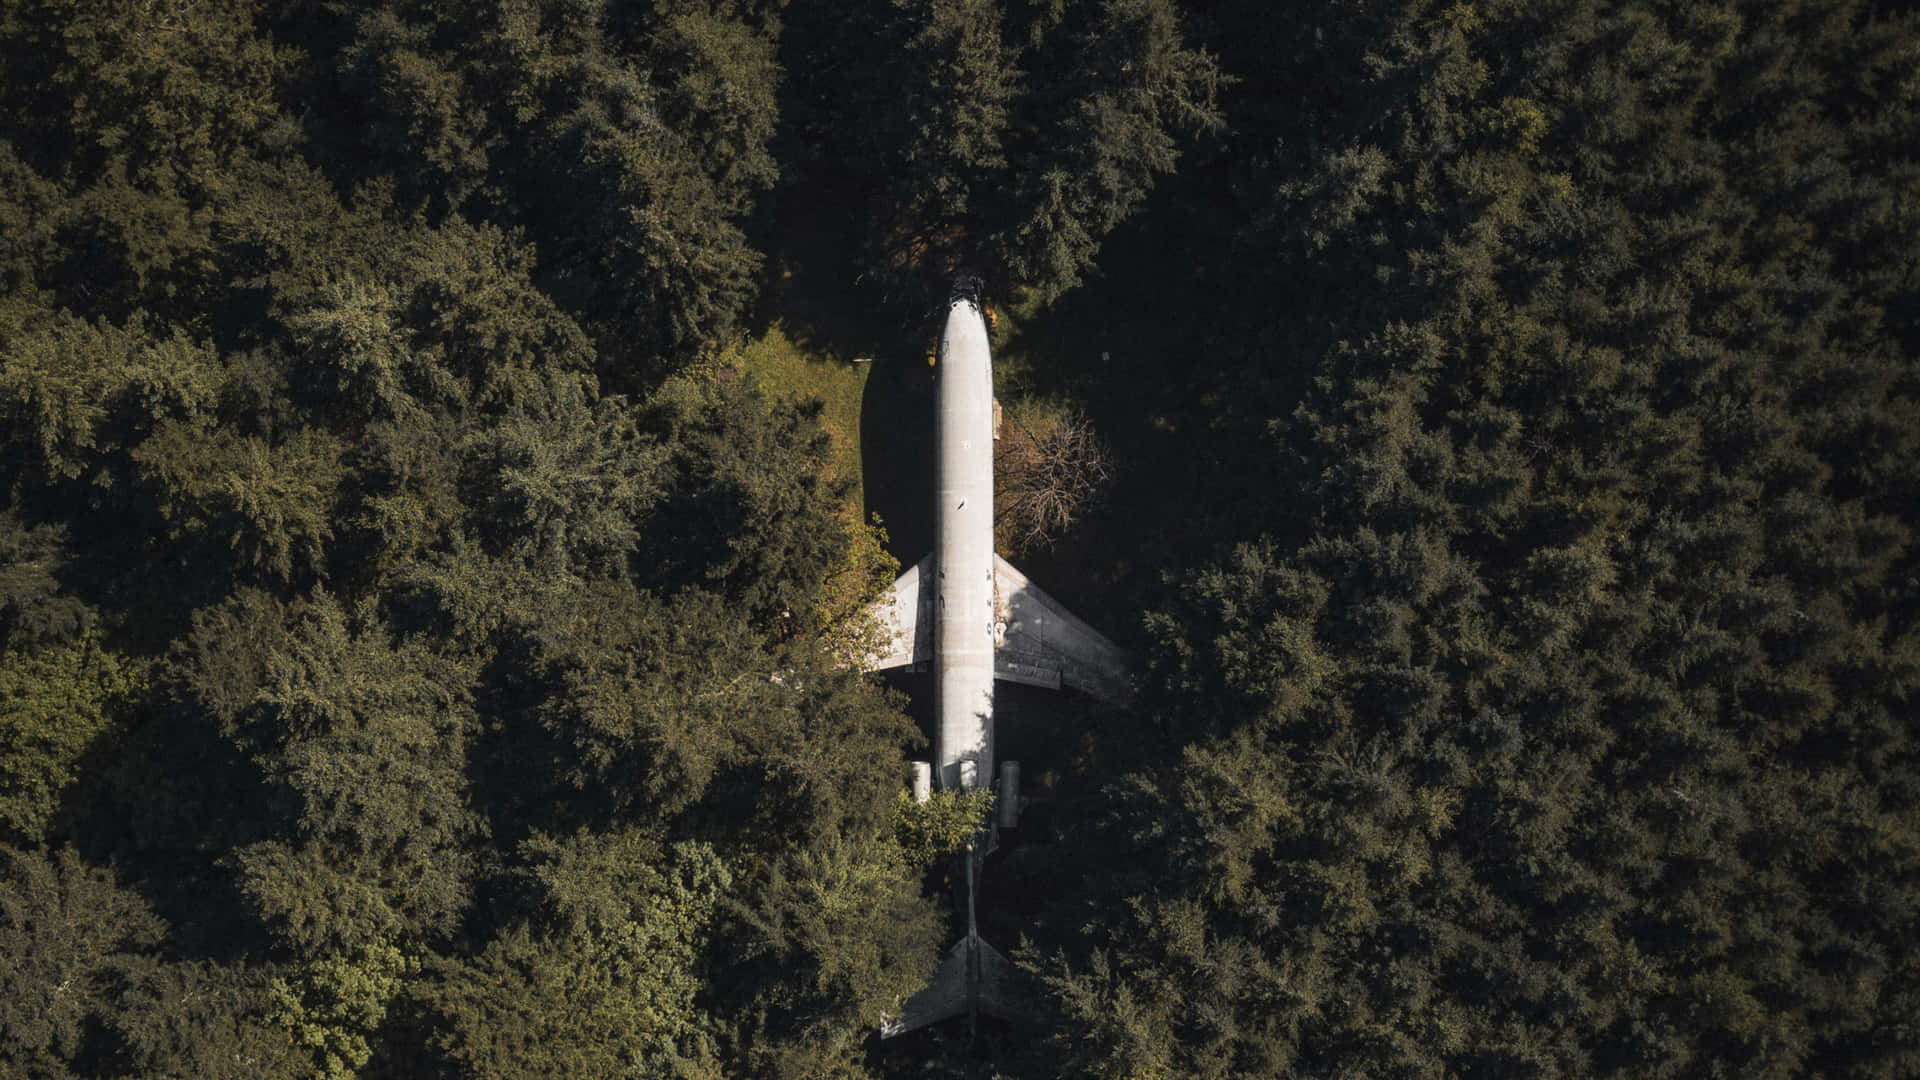 Flugzeugim Wald 1440p Hintergrund Für Kleine Flugzeuge